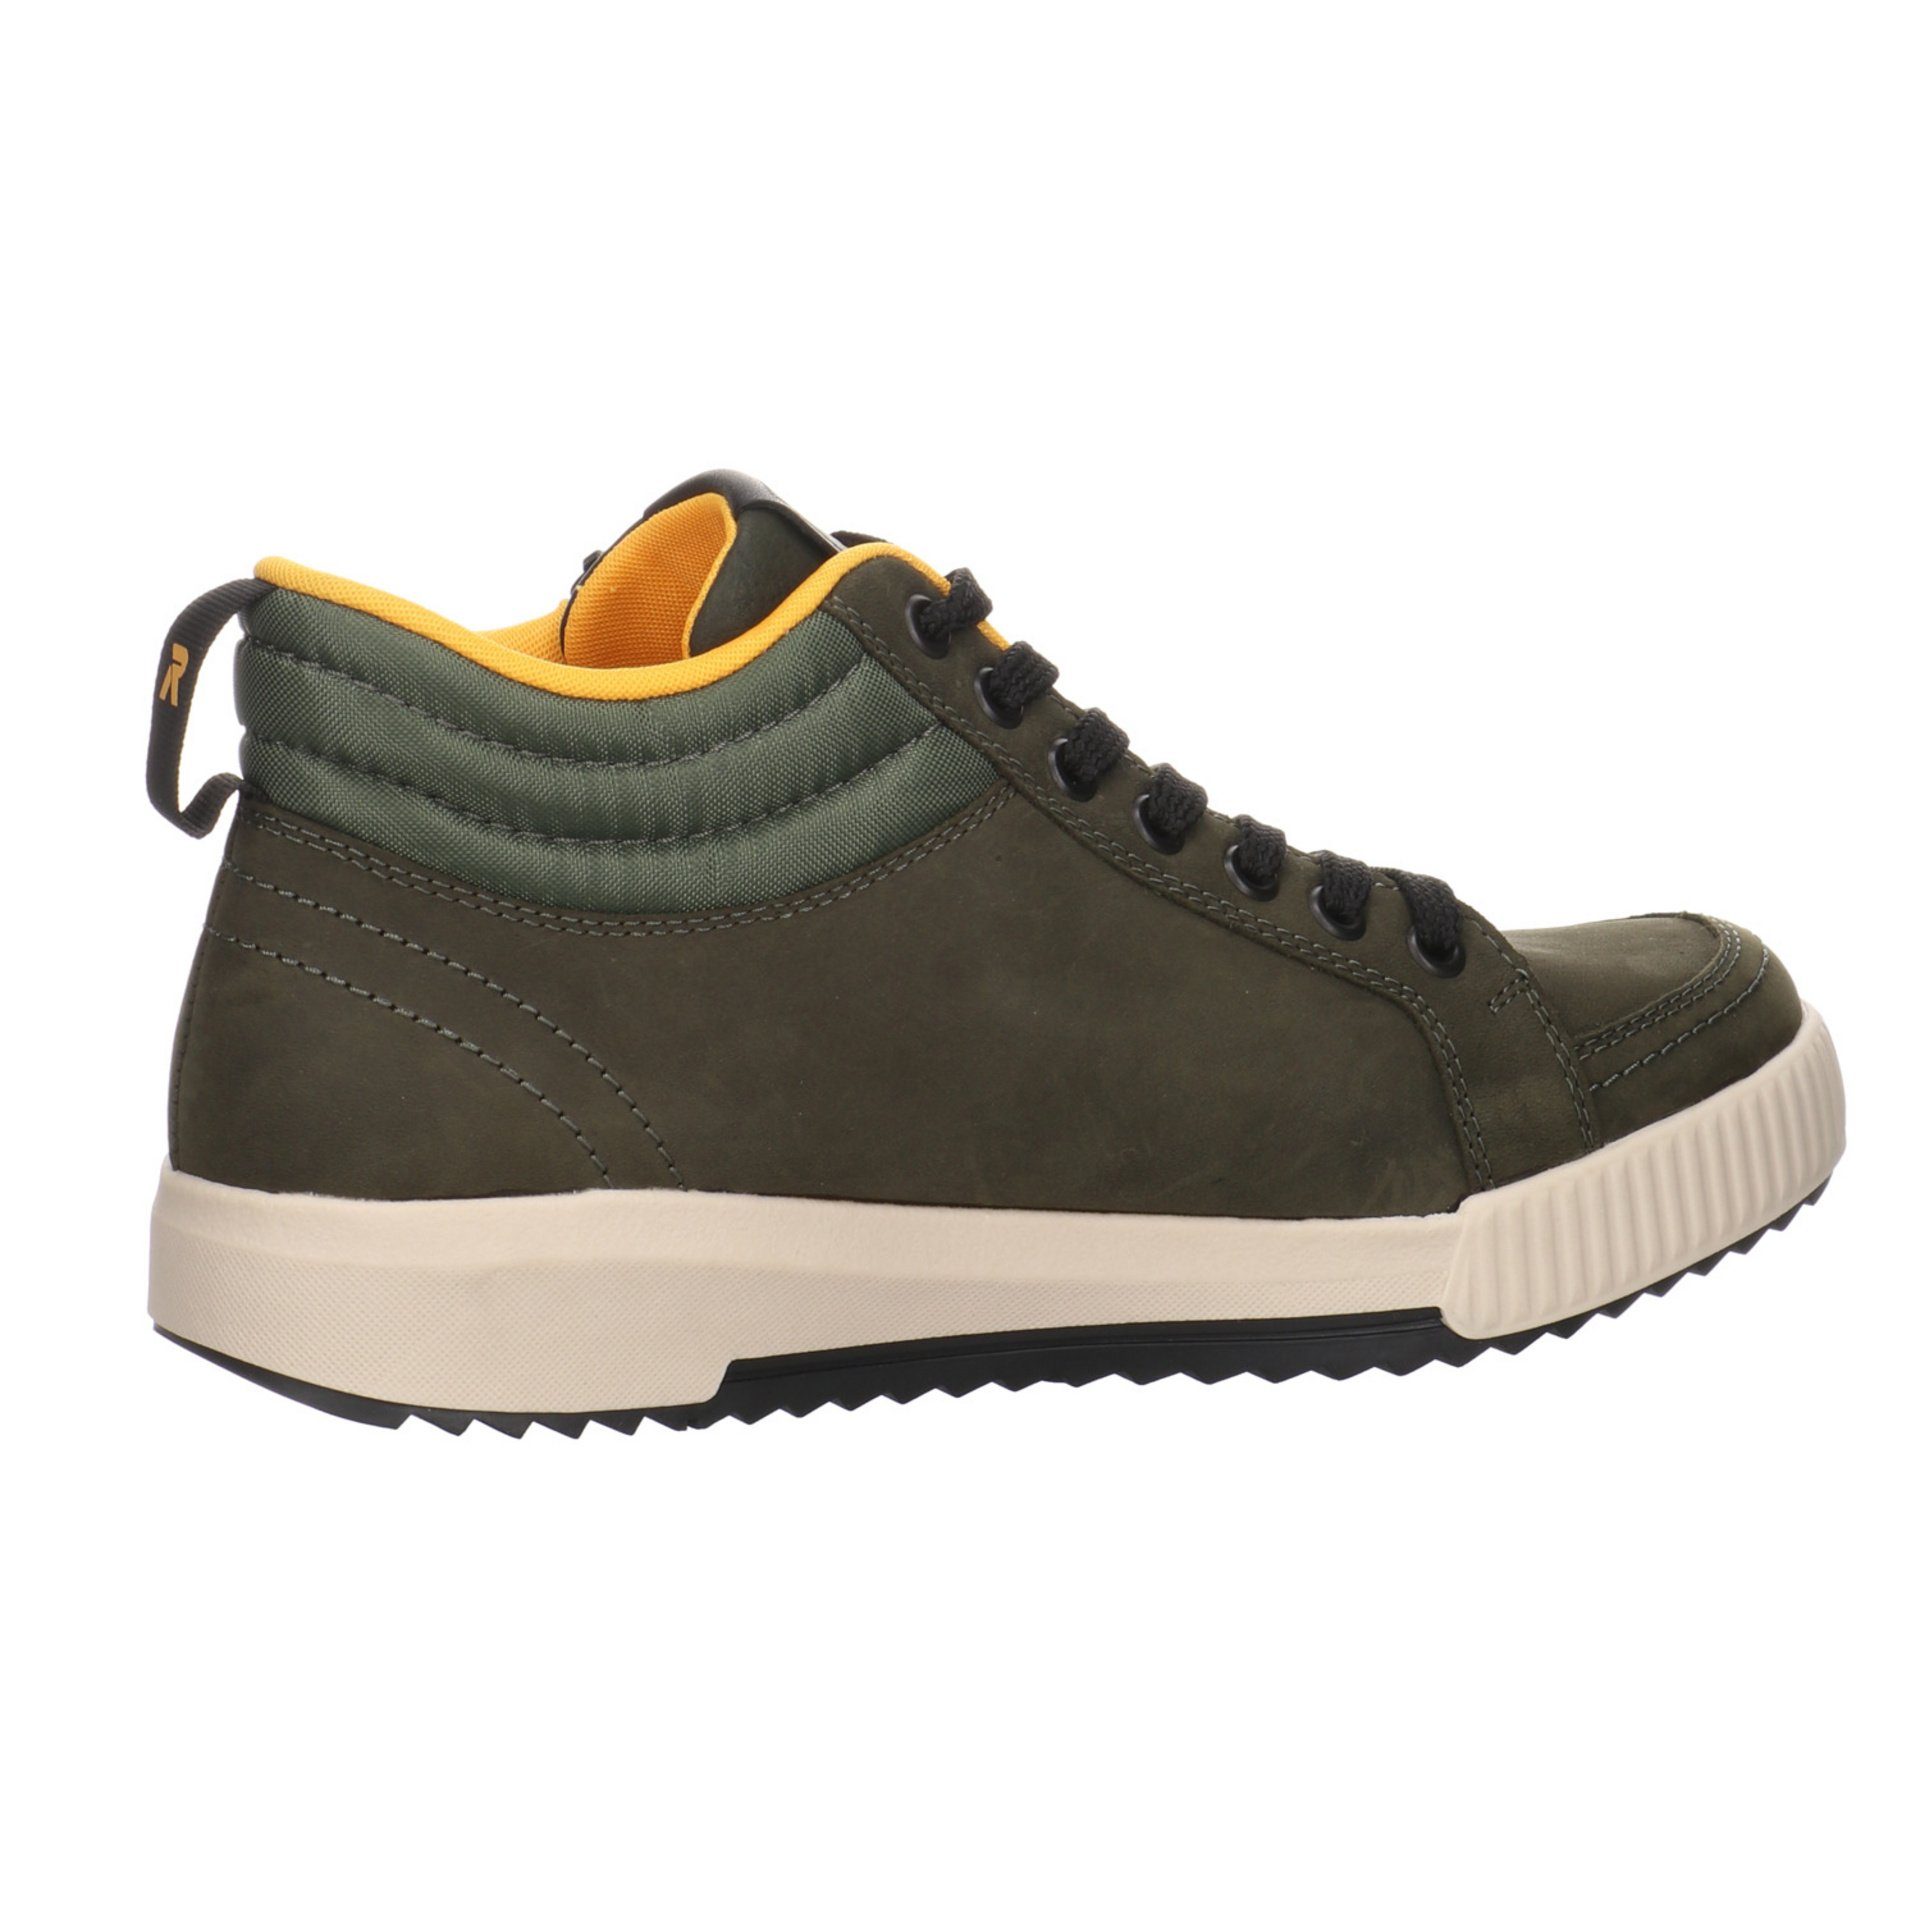 Stiefeletten Rieker Boots Damen moor/olive/forest Leder-/Textilkombination R-Evolution Schuhe Schnürstiefelette